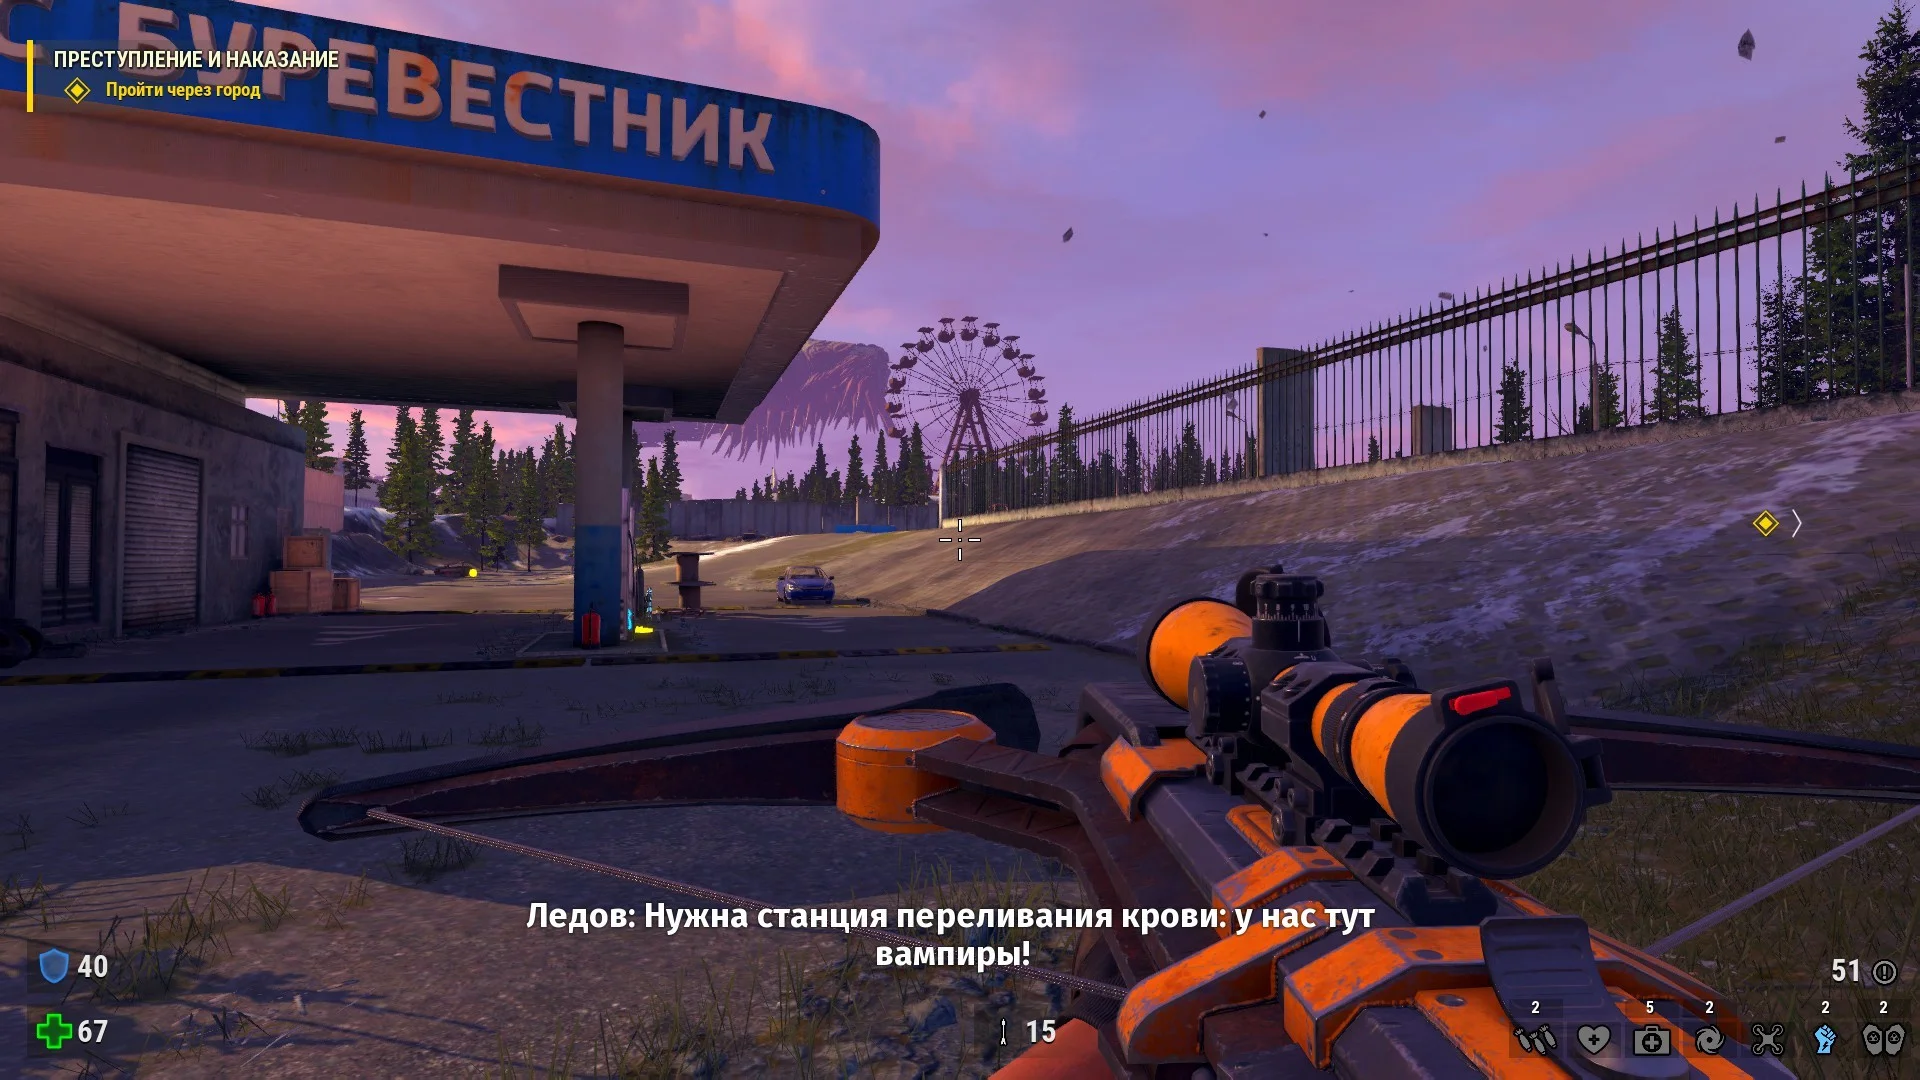 «Думали на русском, писали на английском» — интервью с разработчиками Serious Sam: Siberian Mayhem - фото 6